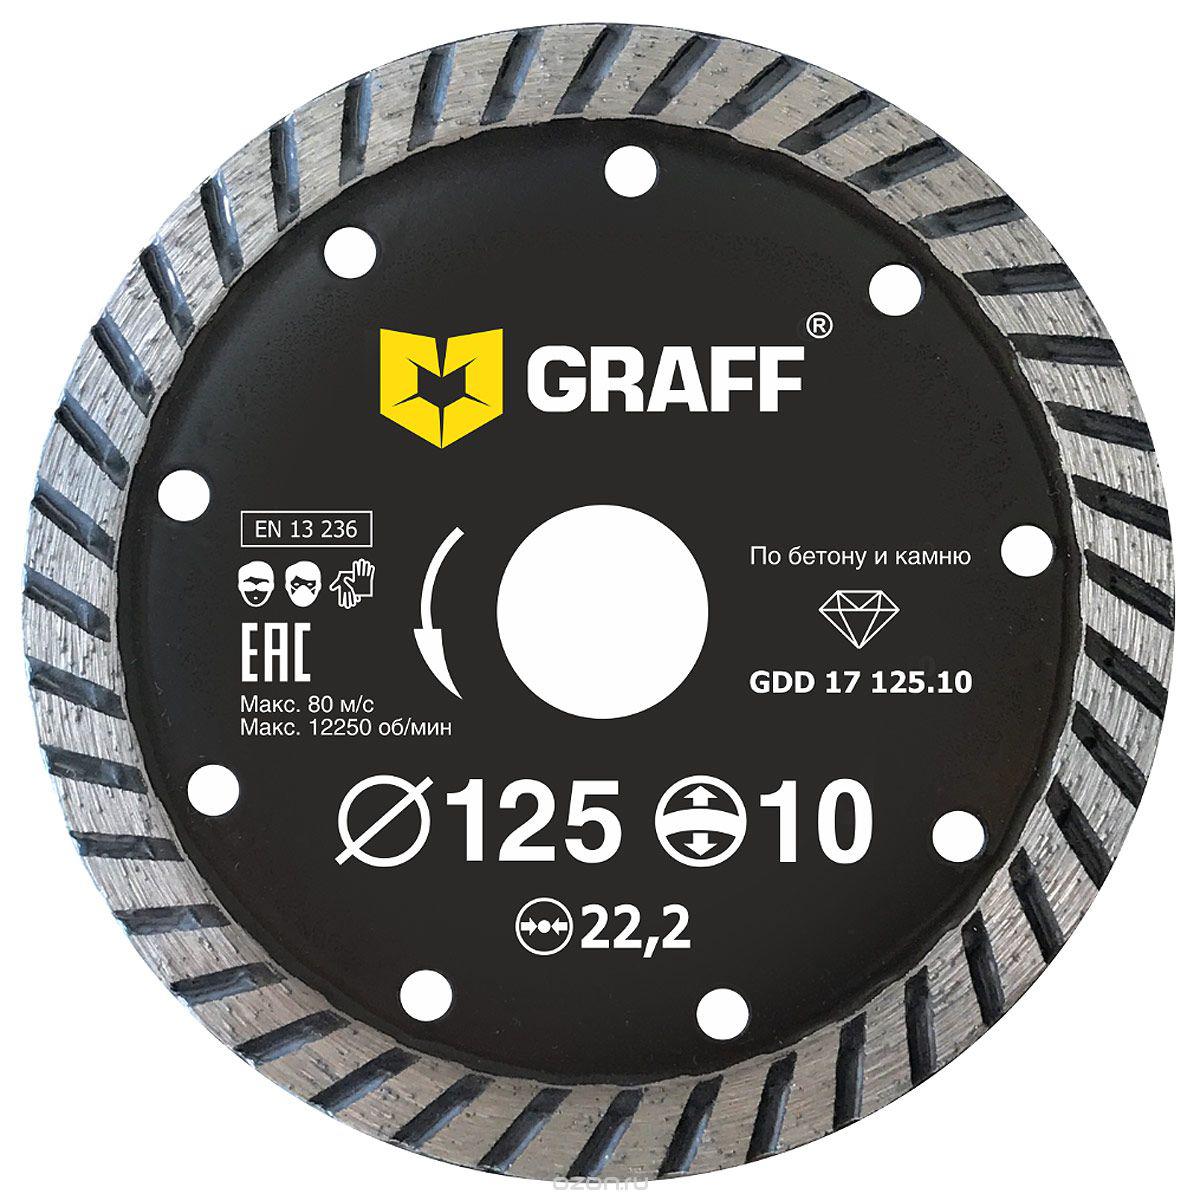 Диск отрезной алмазный GRAFF (GDD 17 125.10) Ф125х22мм по бетону алмазный отрезной диск для угловых шлифмашин fit